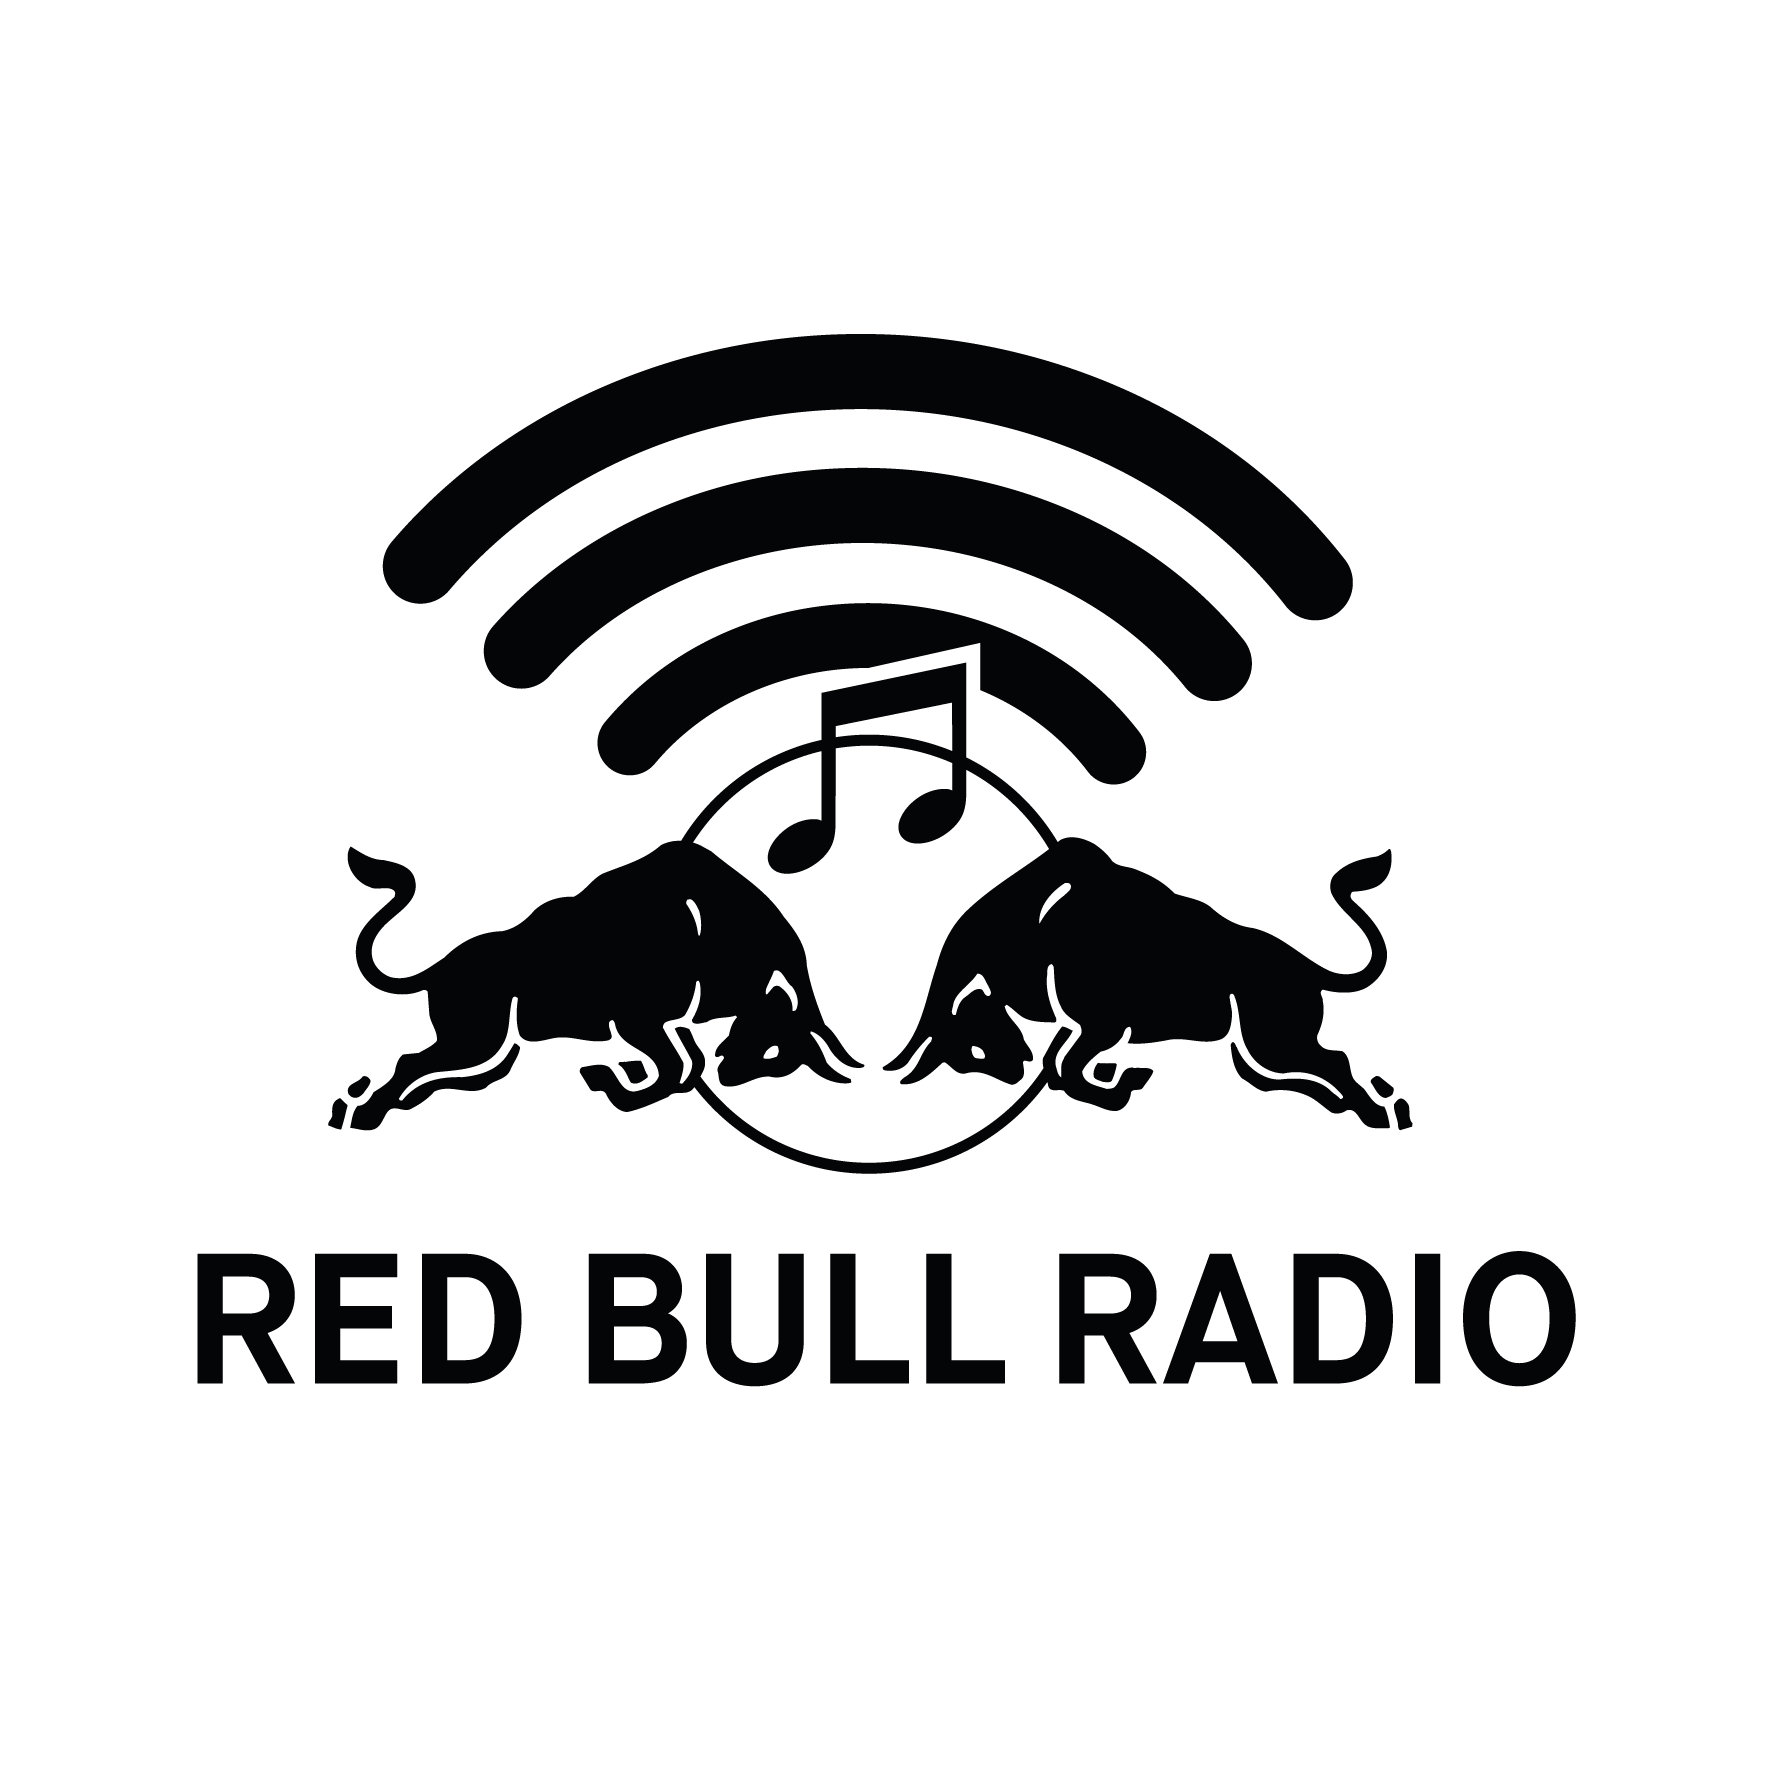 Red and Black Bull Logo - Red Bull Energy Drink Website - Energy Drink - Red Bull UK